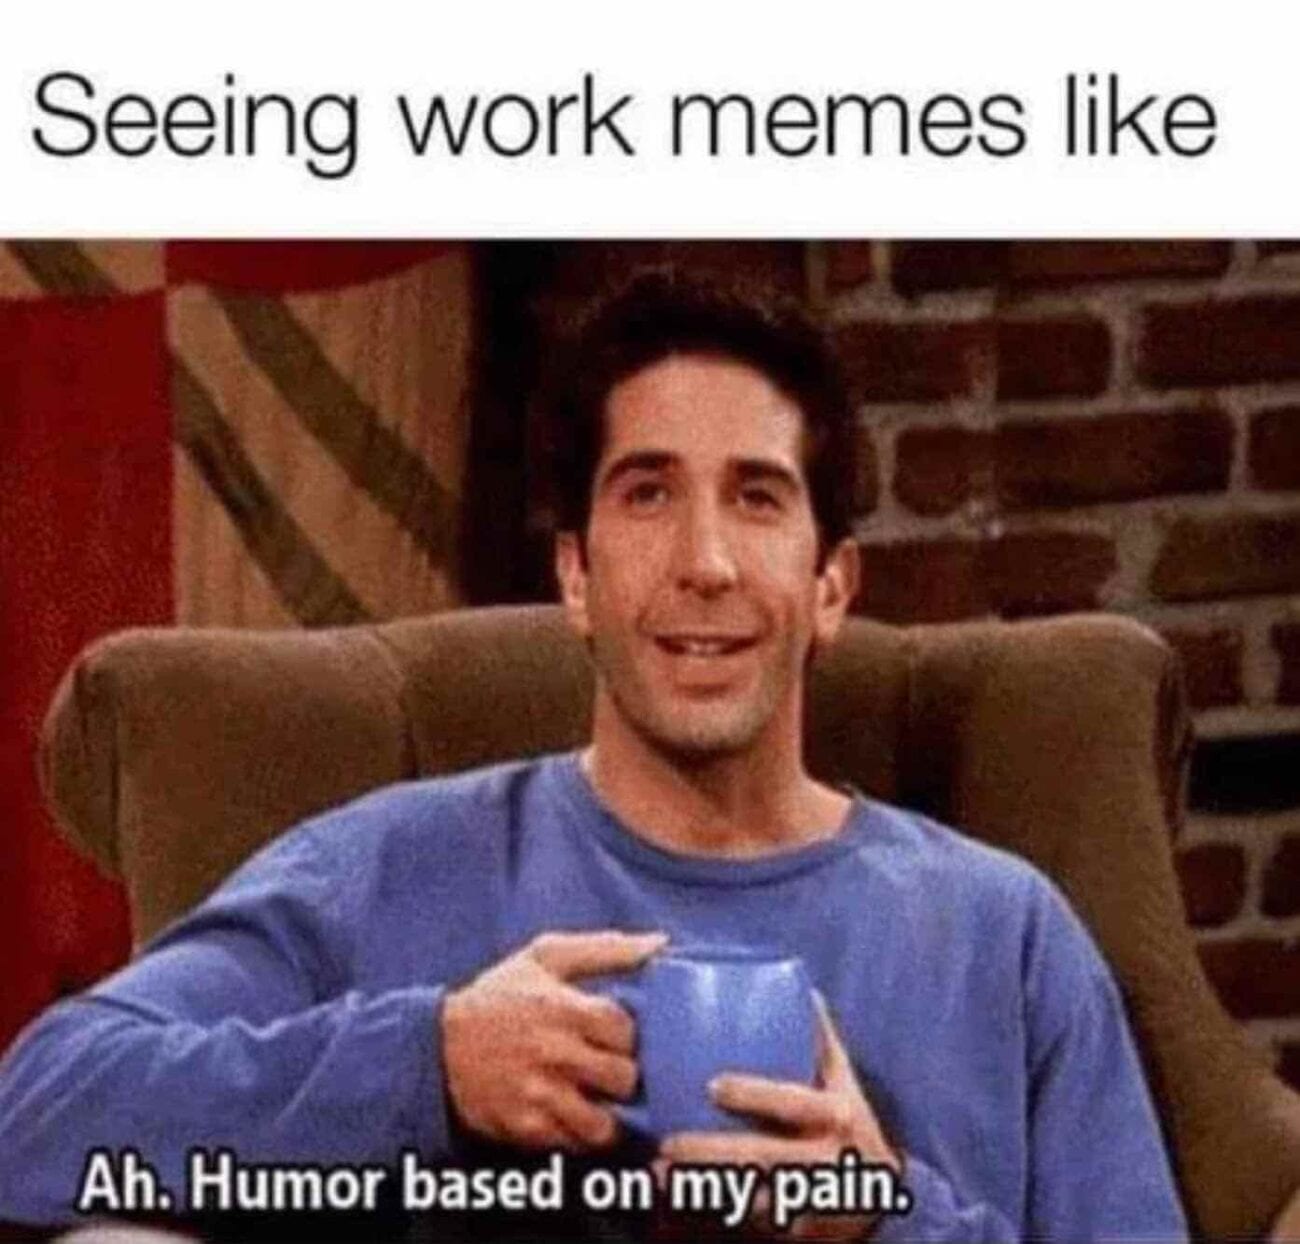 work memes - funny memes - Seeing work memes Ah. Humor based on my pain.